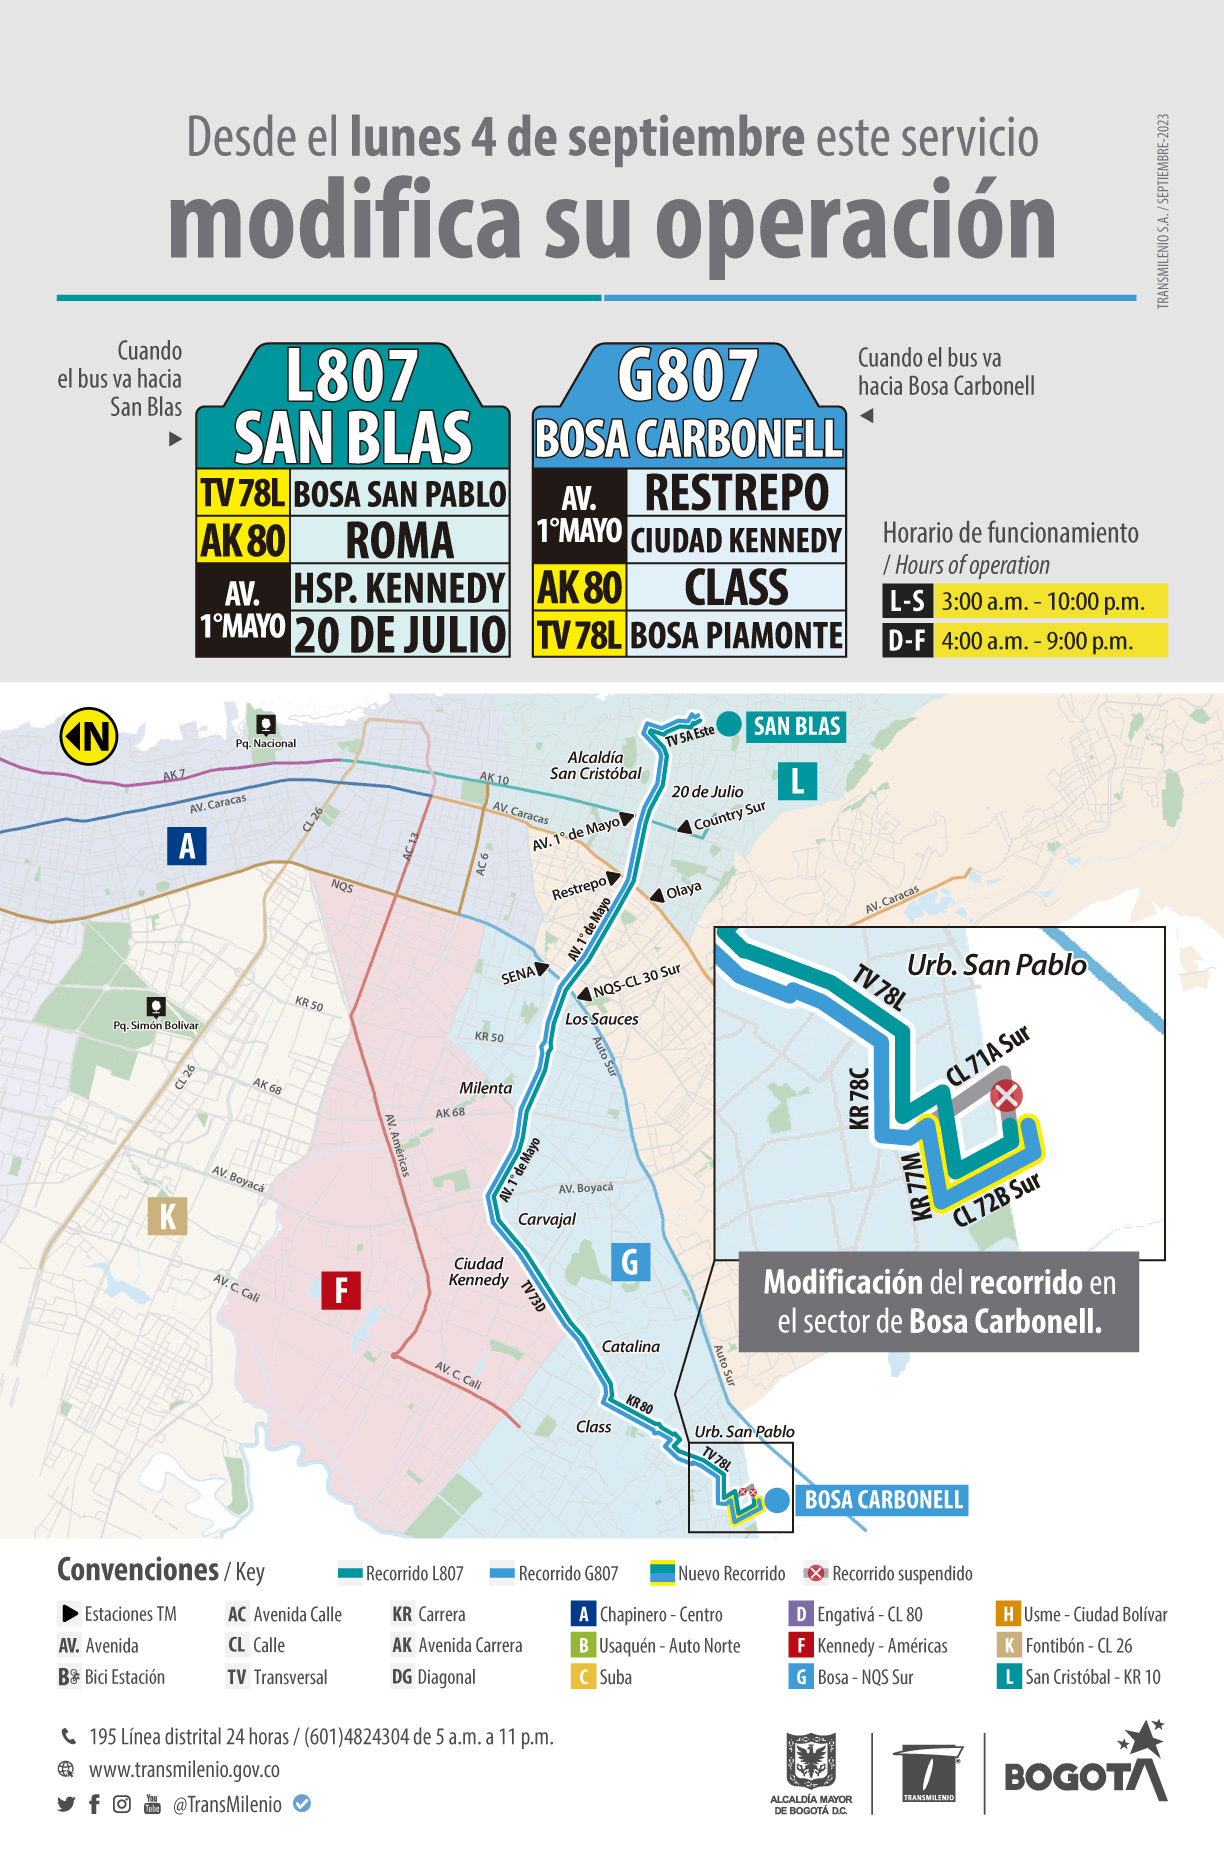  la ruta zonal L807 San Blas - G807 Bosa Carbonell, modifica su operación en el sector de Bosa Carbonell